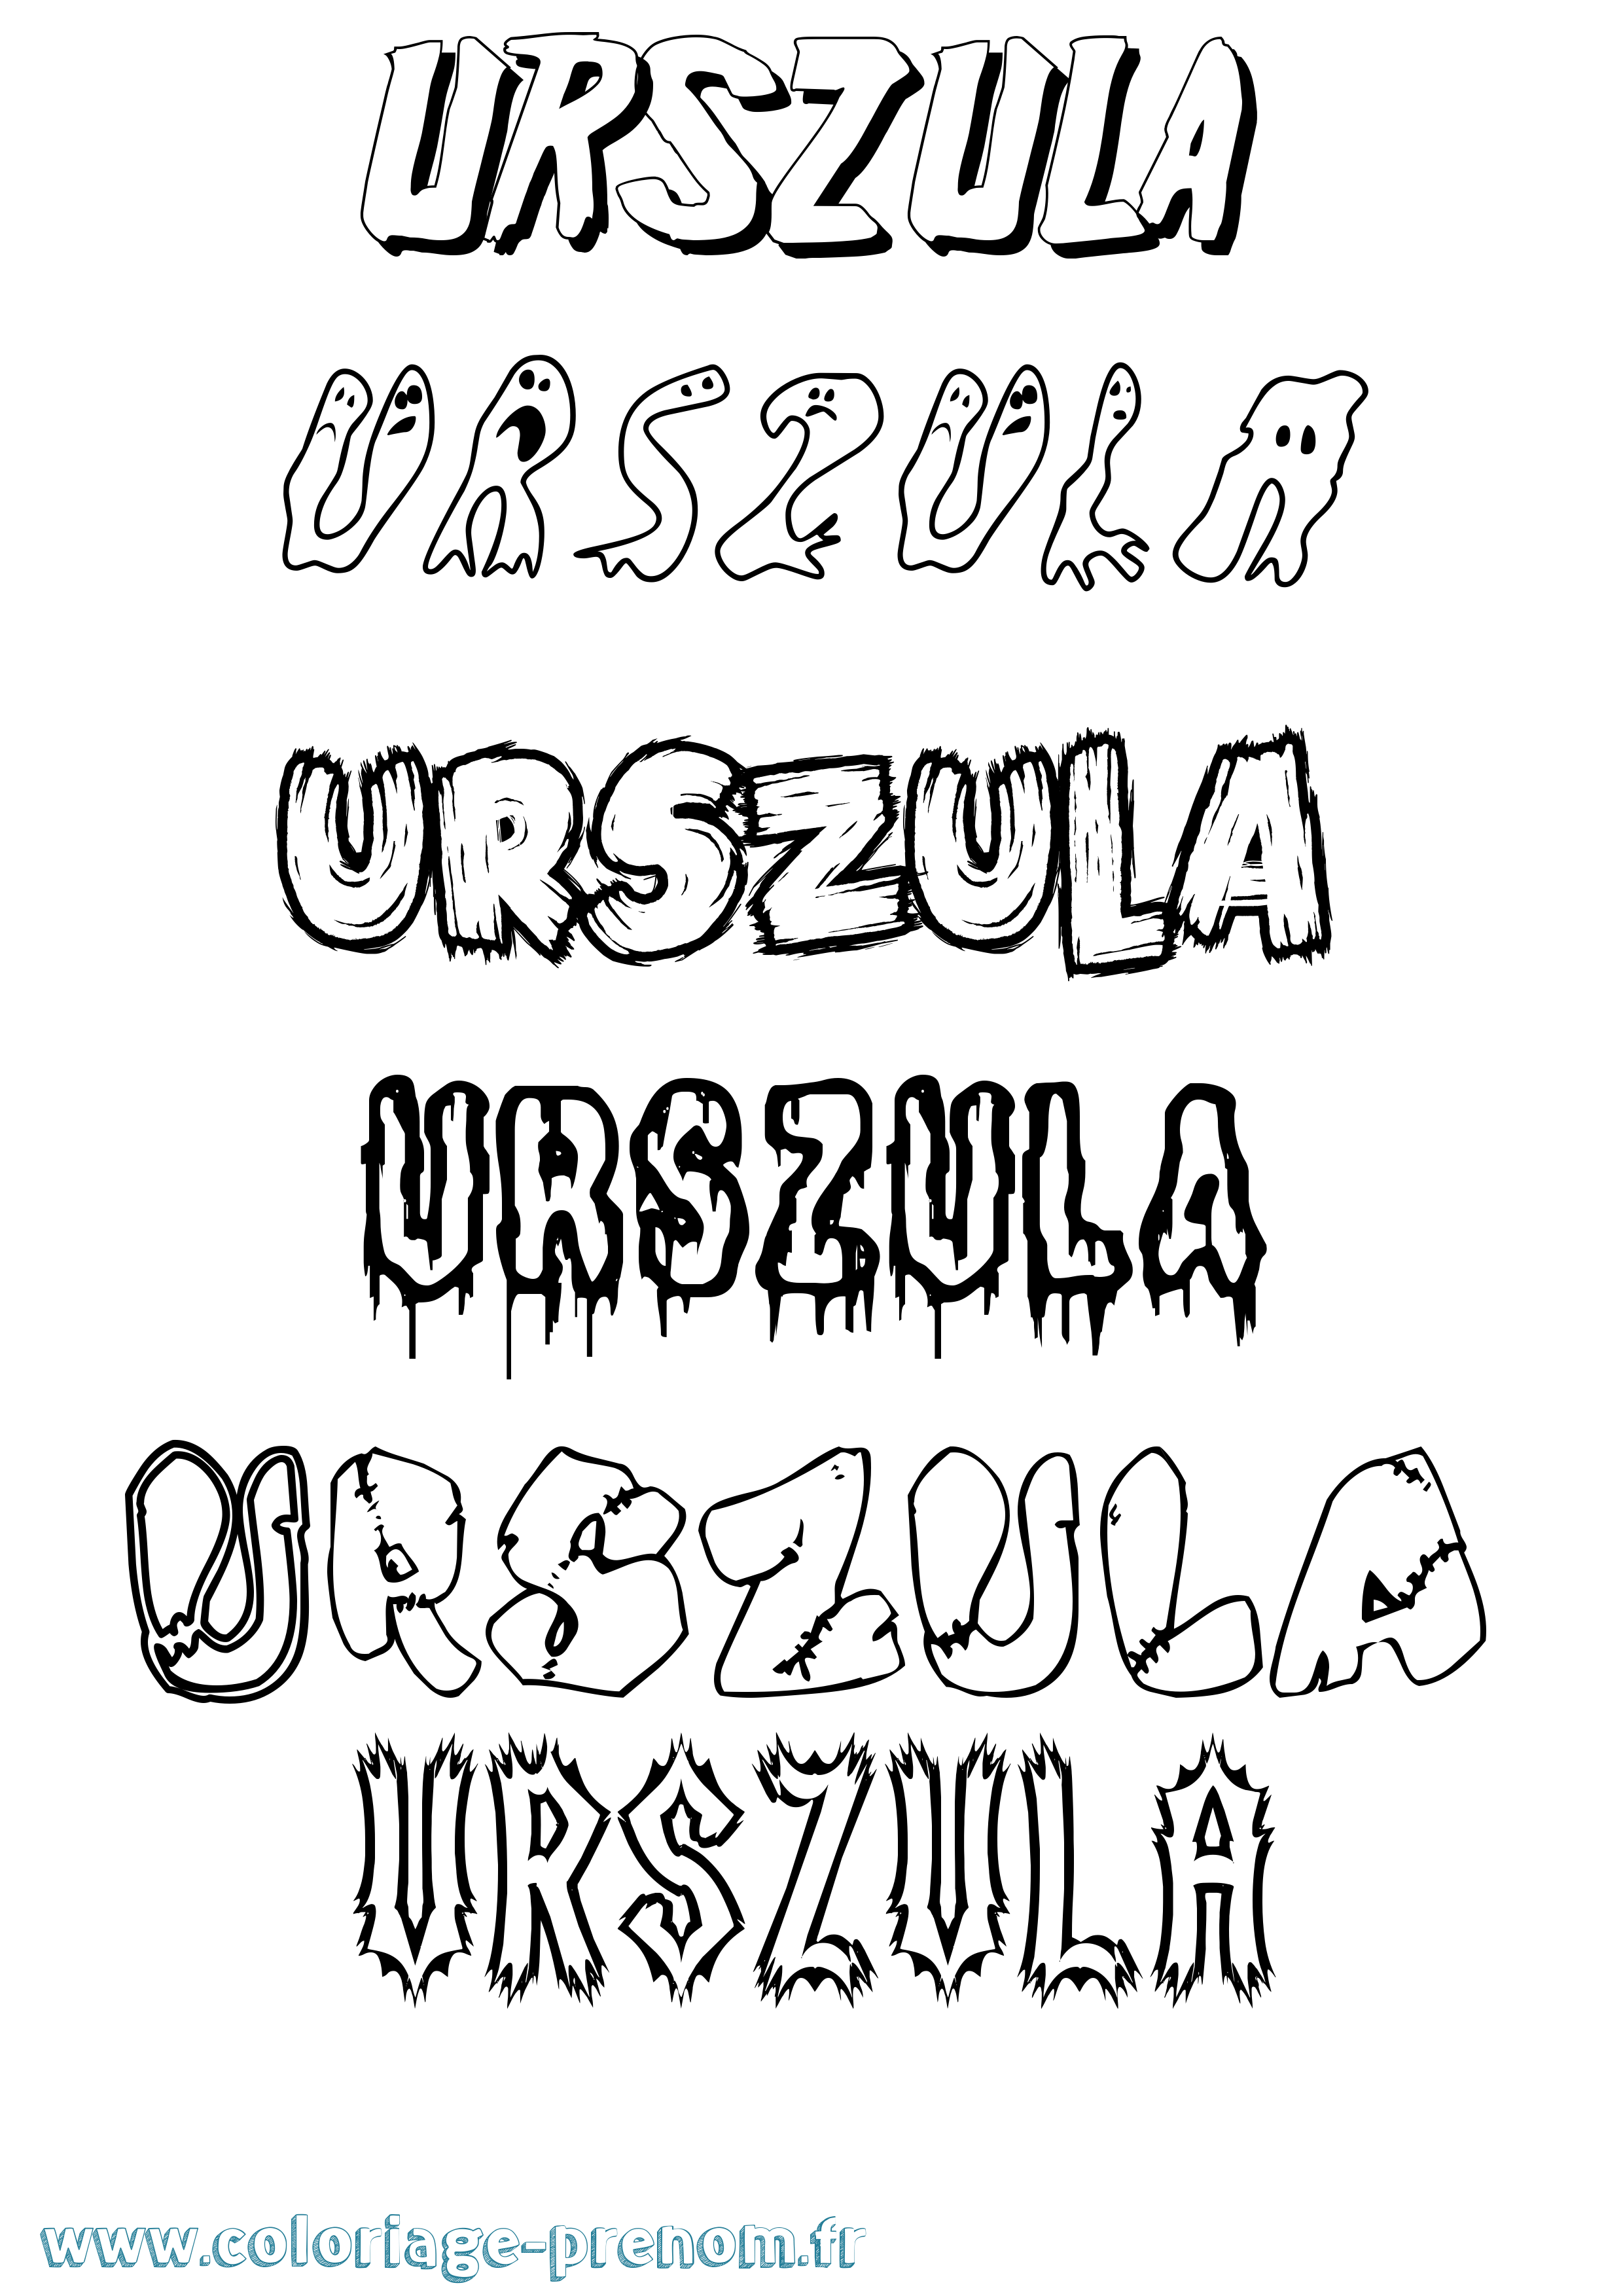 Coloriage prénom Urszula Frisson